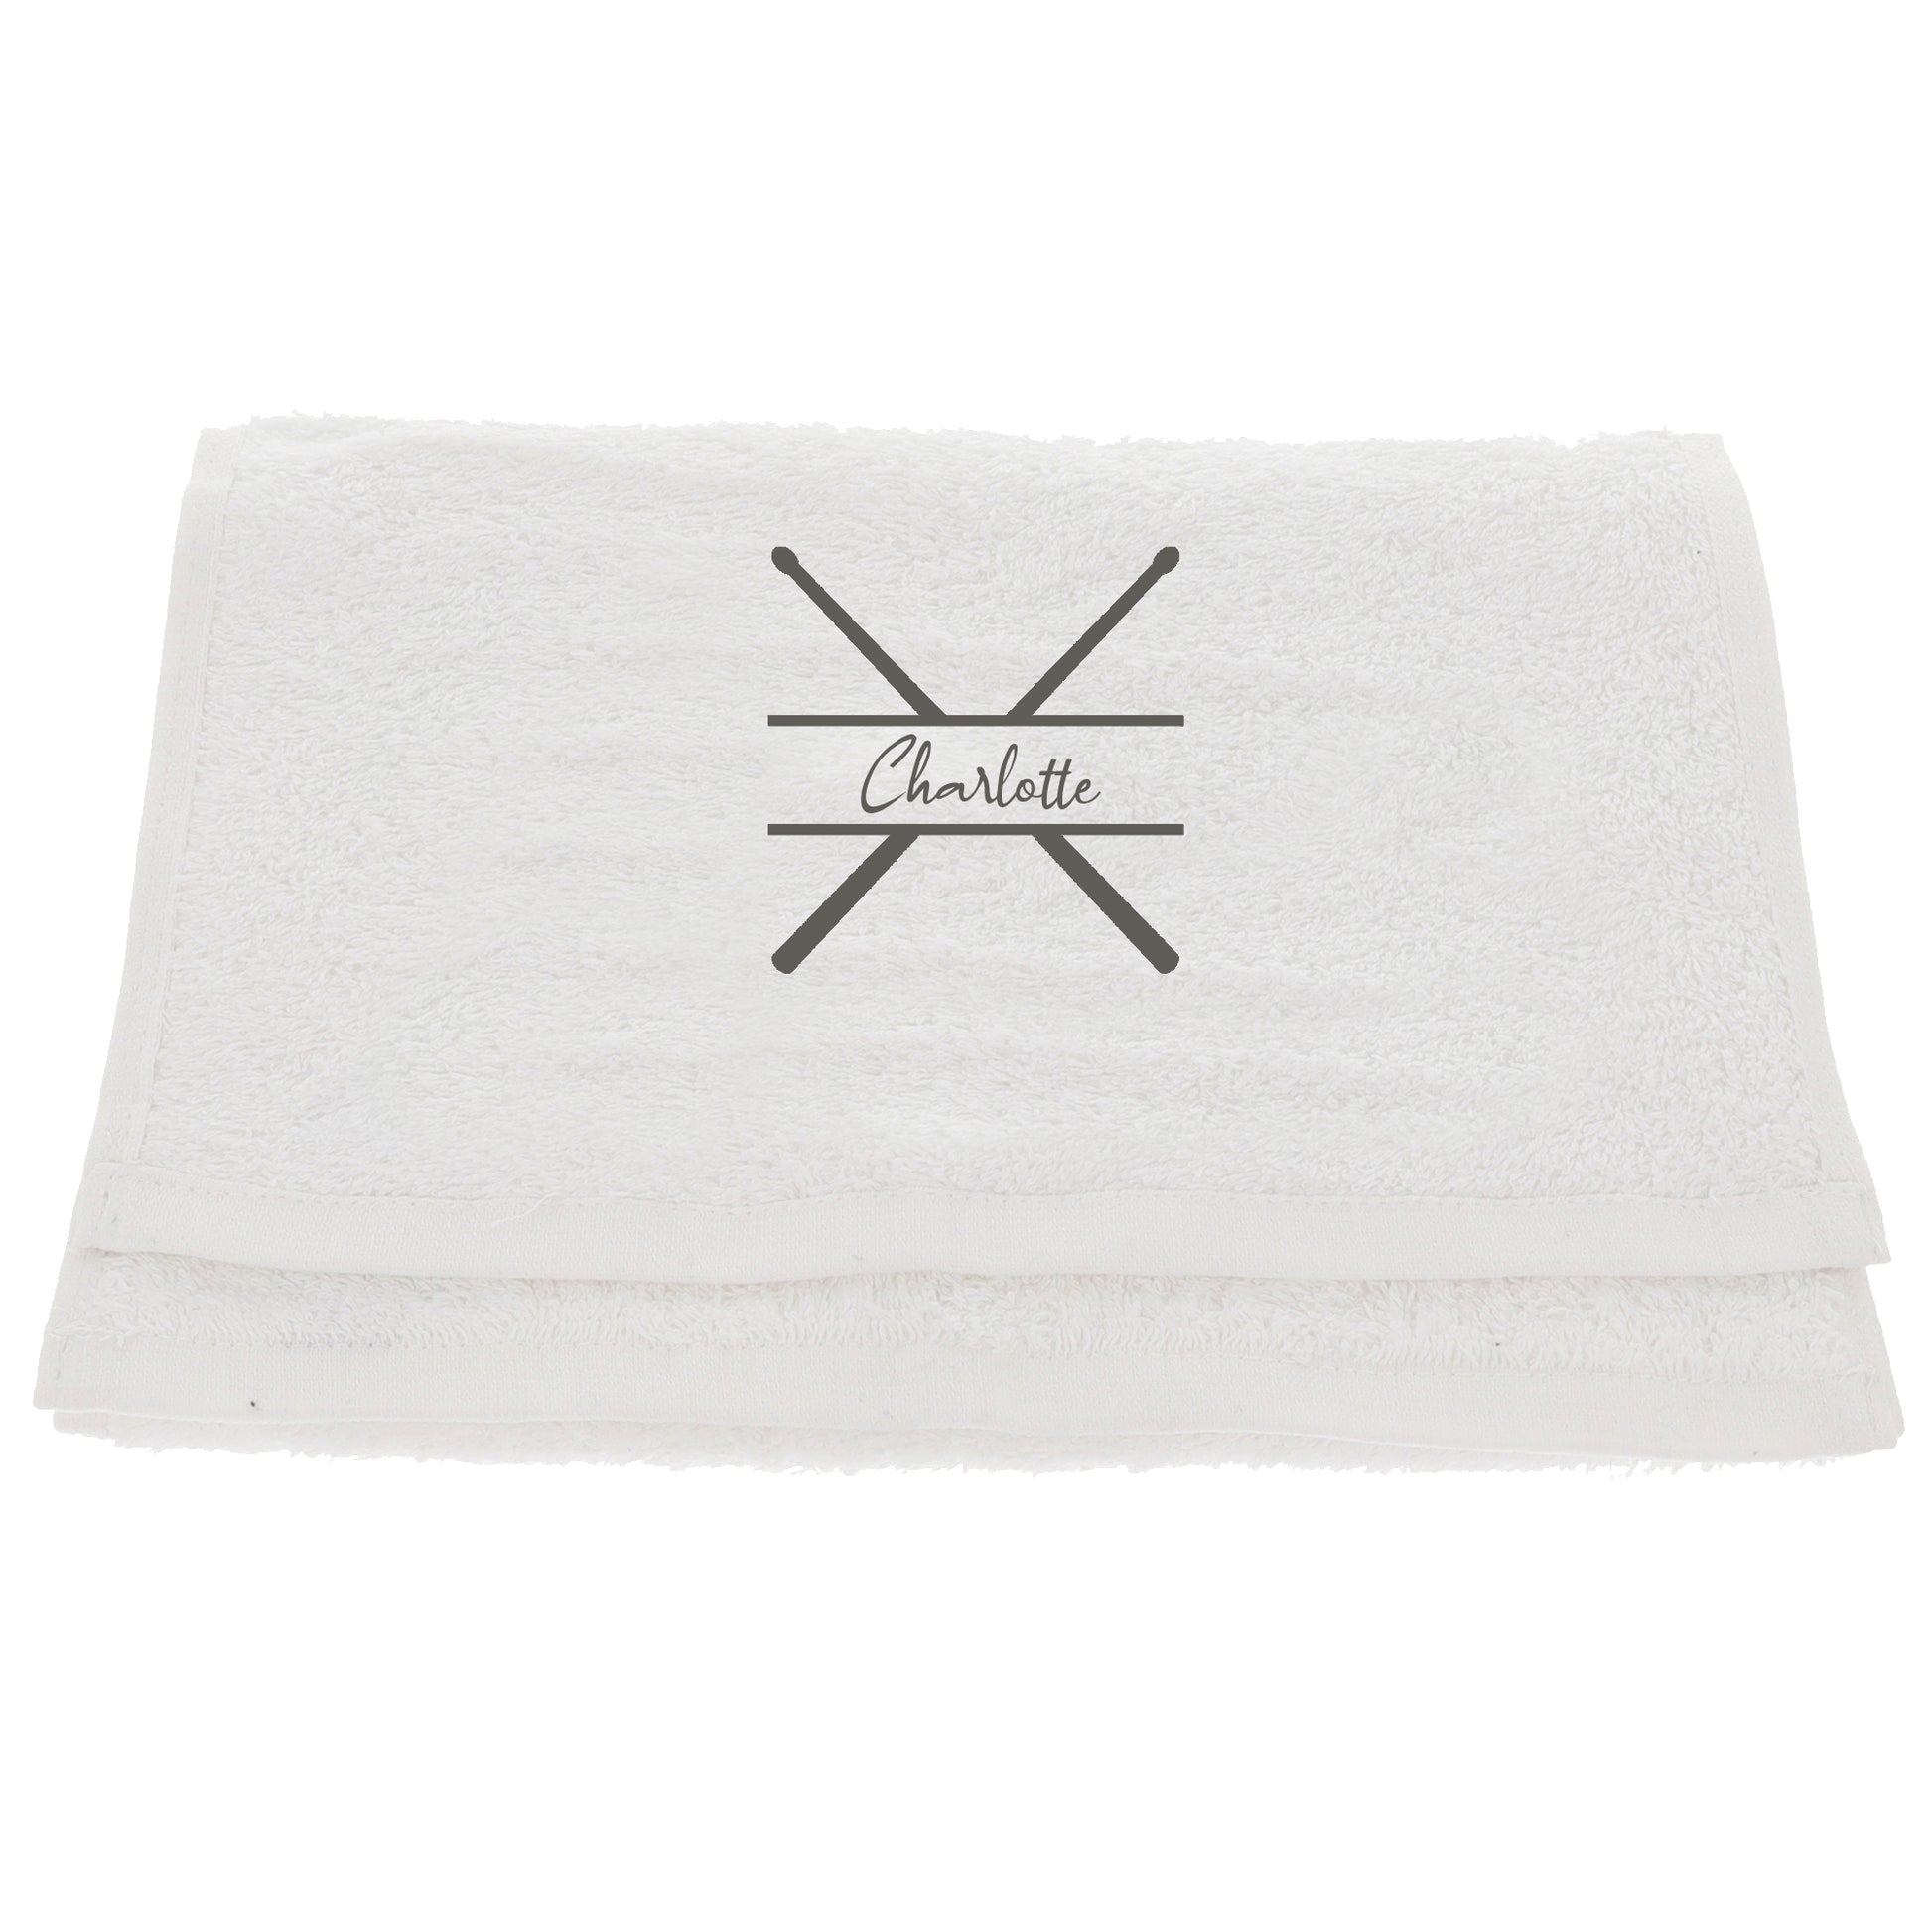 Personalised Embroidered Drummer Towel  - Always Looking Good -   